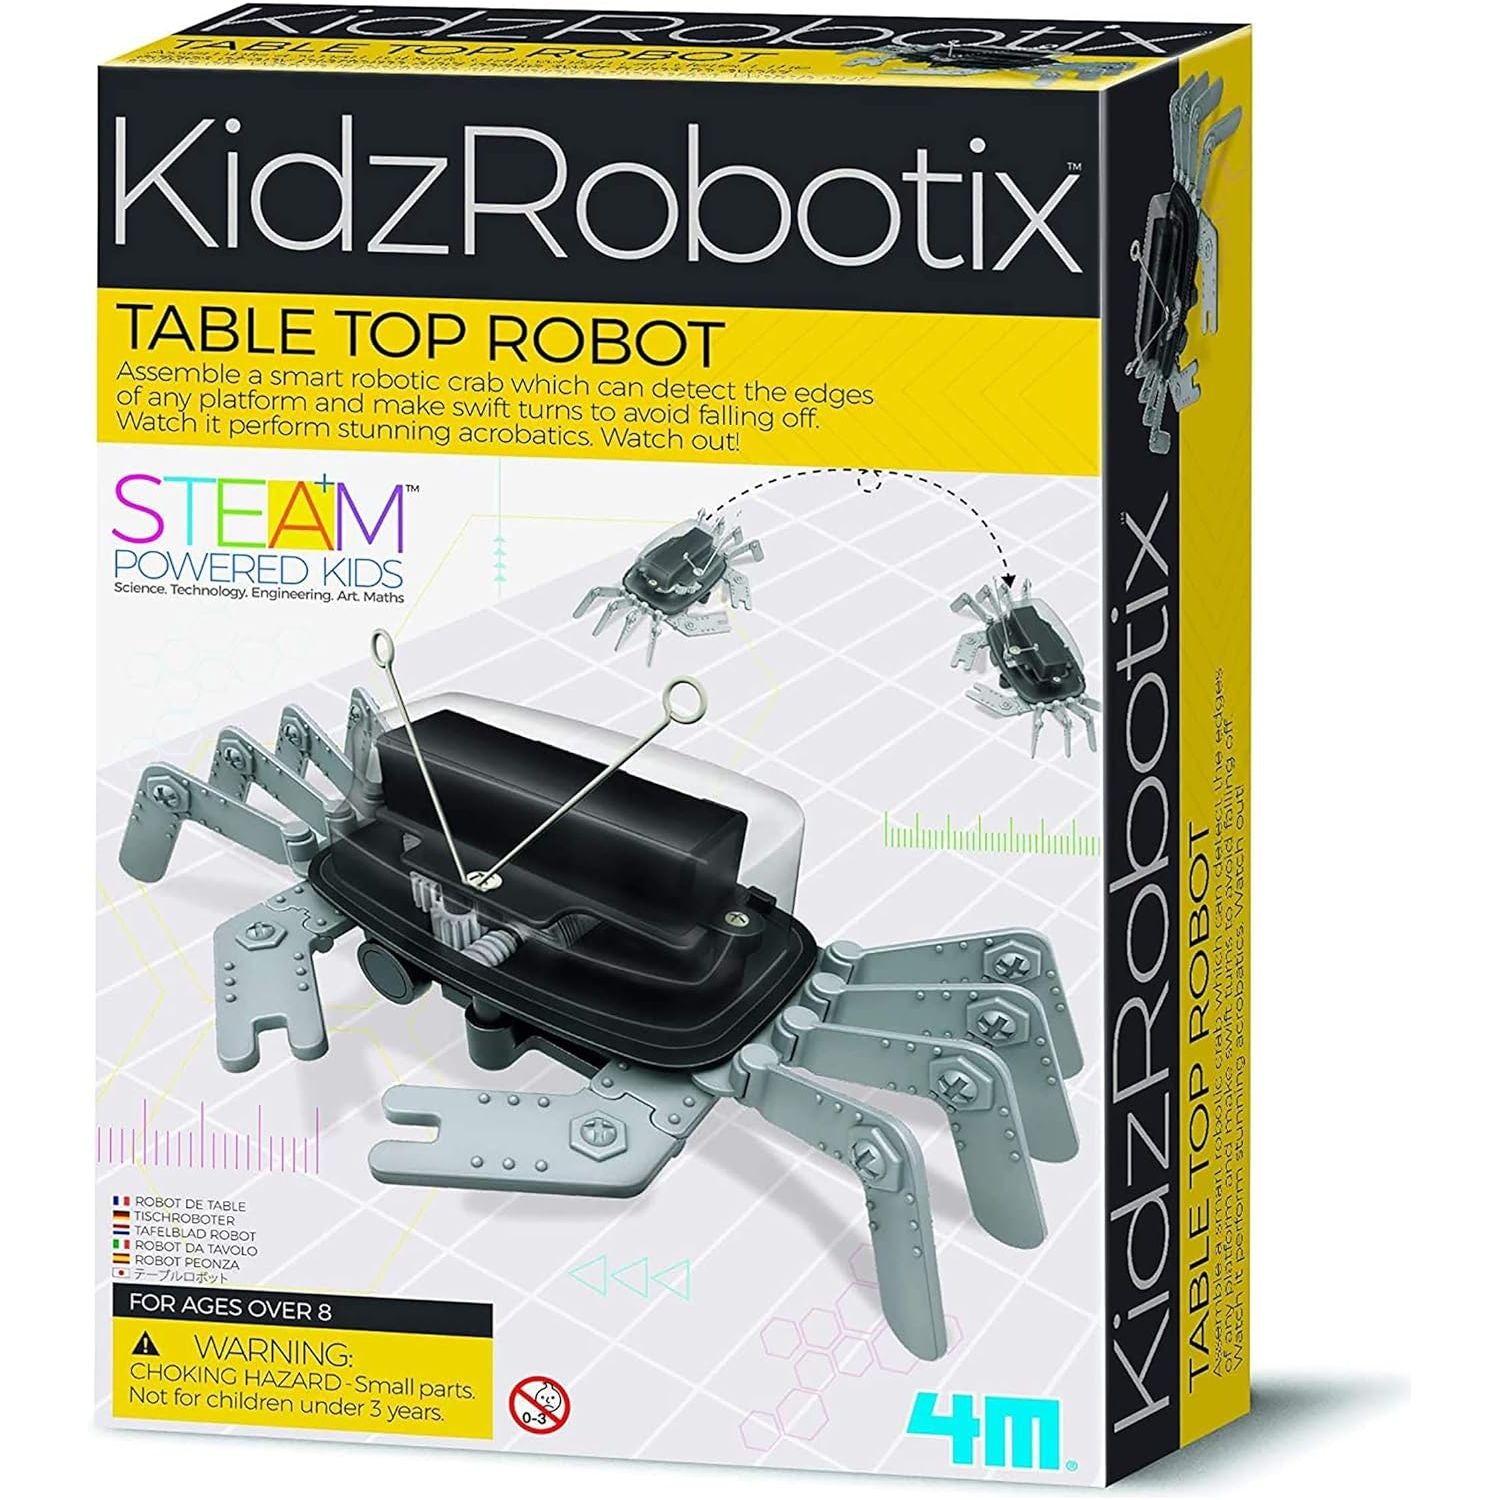 4M- روبوت على الطاولة - ألعاب جذعية روبوتية يمكنك صنعها بنفسك، هدية لكشف الحواف الهندسية